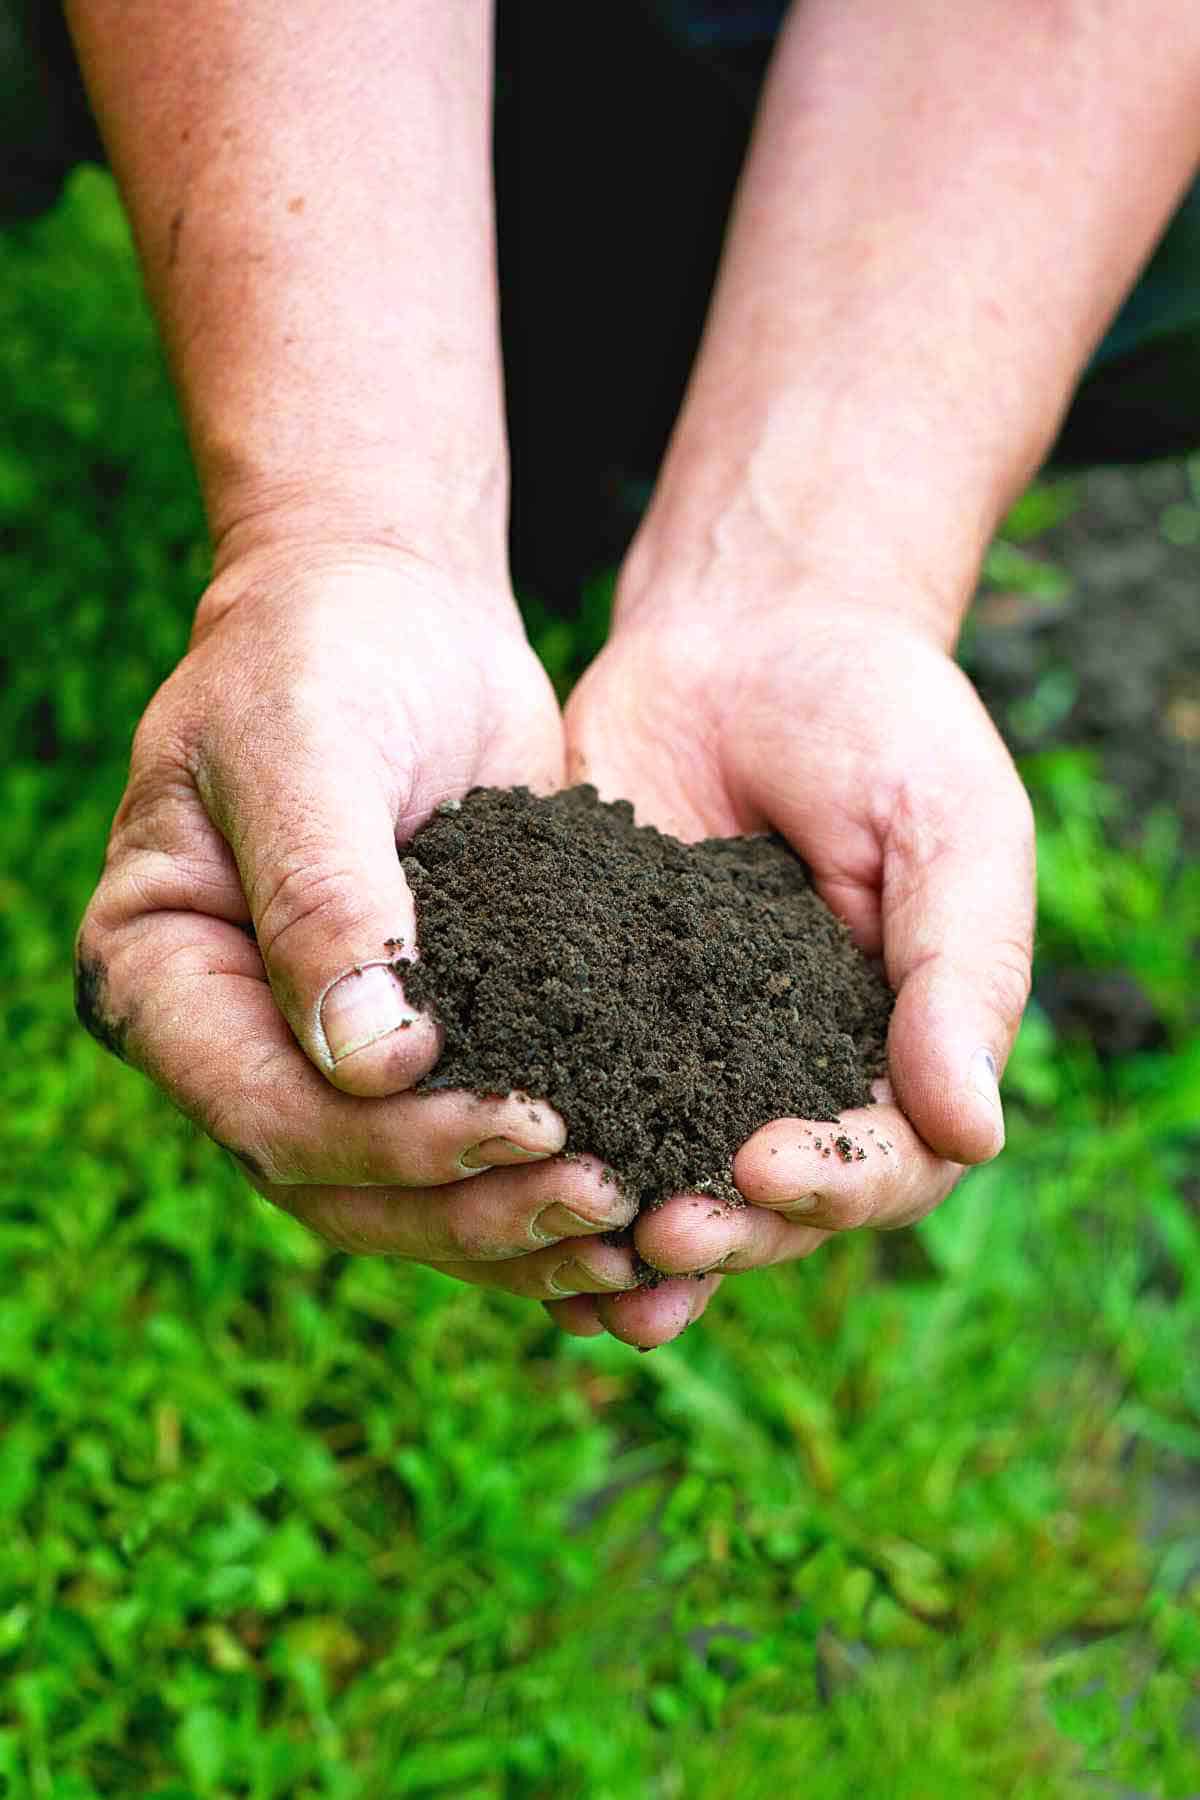 A man's hands holding good organic soil in a garden.